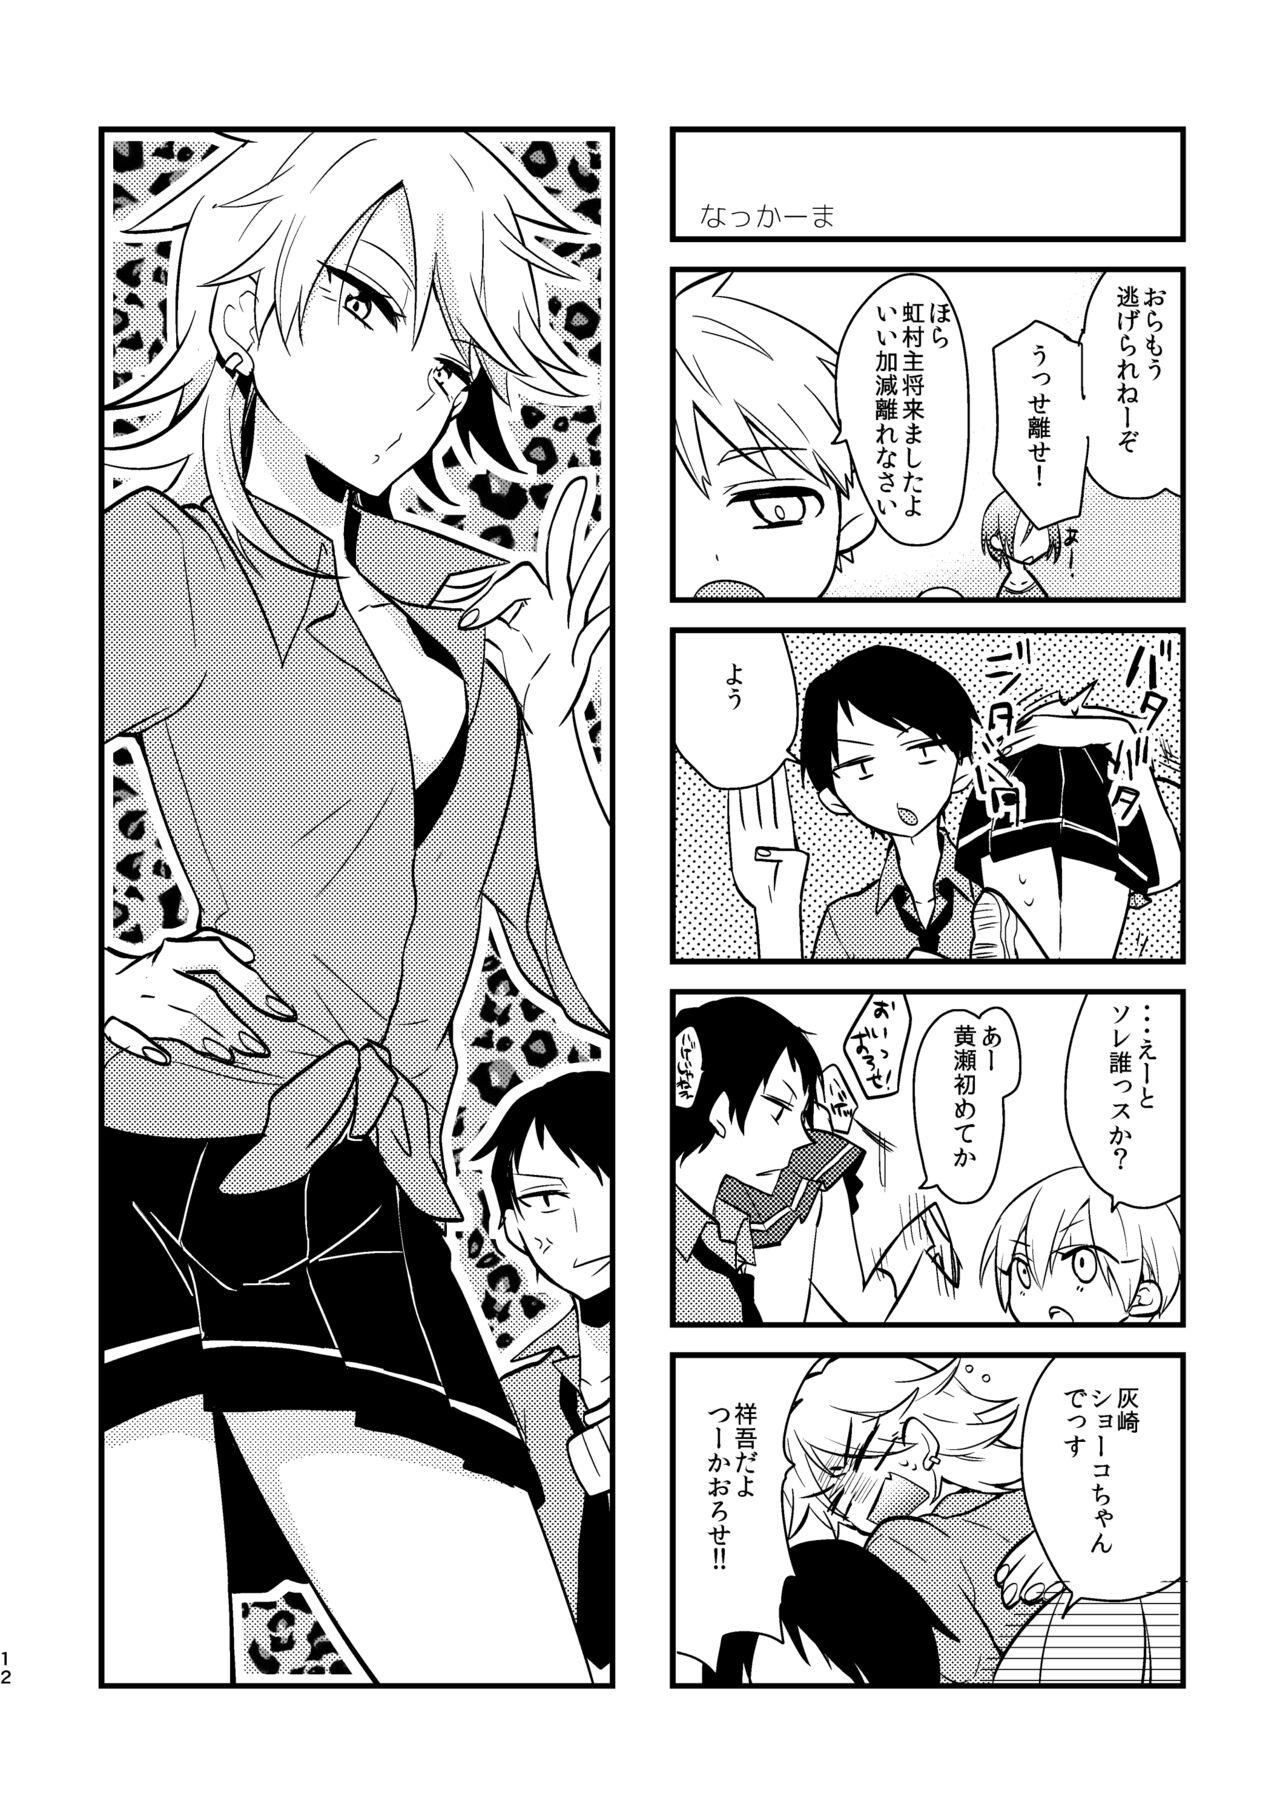 Squirt Otoko Tokidoki Onnanoko 2 - Kuroko no basuke Gay Party - Page 10